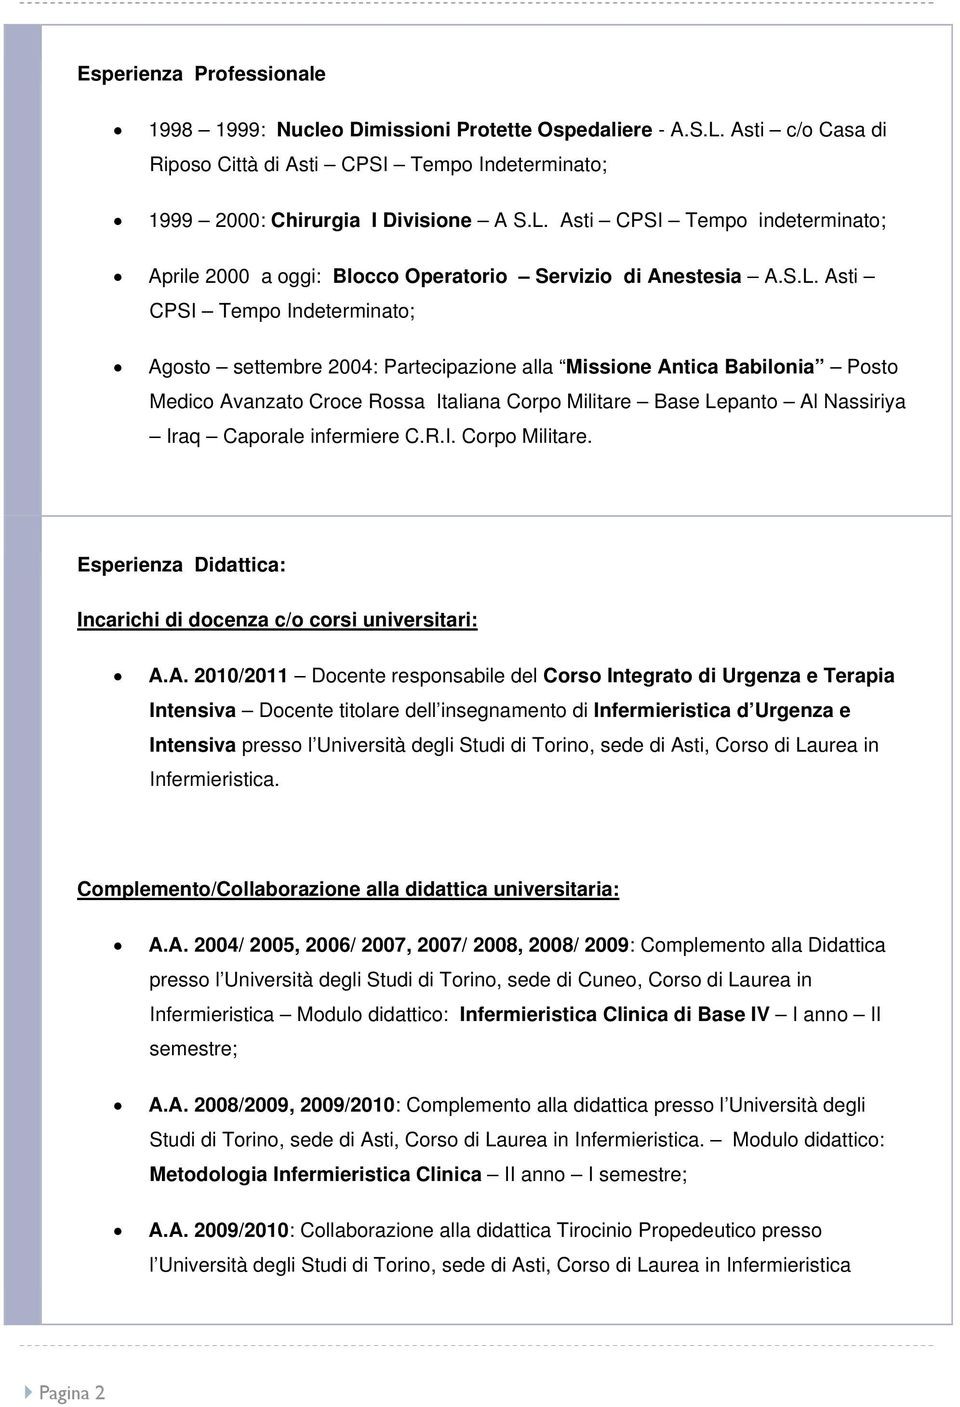 Curriculum Vitae Giorgio Bergesio Pdf Free Download